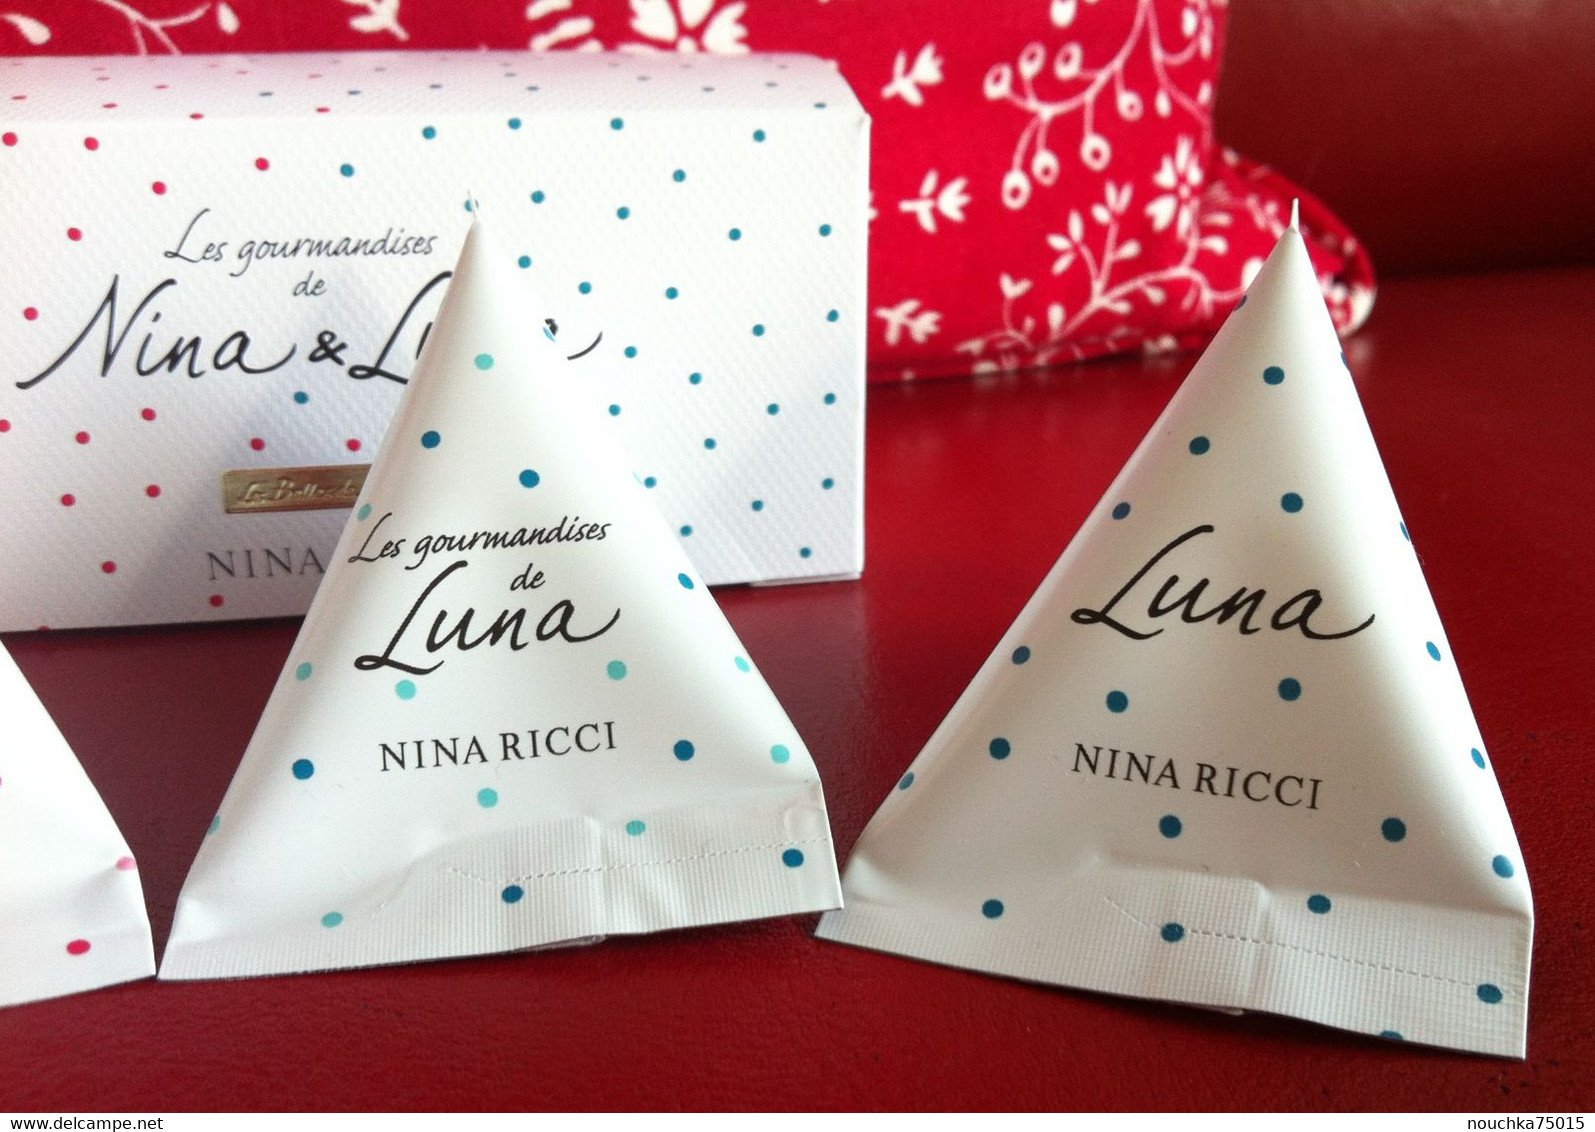 Nina Ricci - Les Gourmandises De Nina Et Luna - Schoonheidsproducten